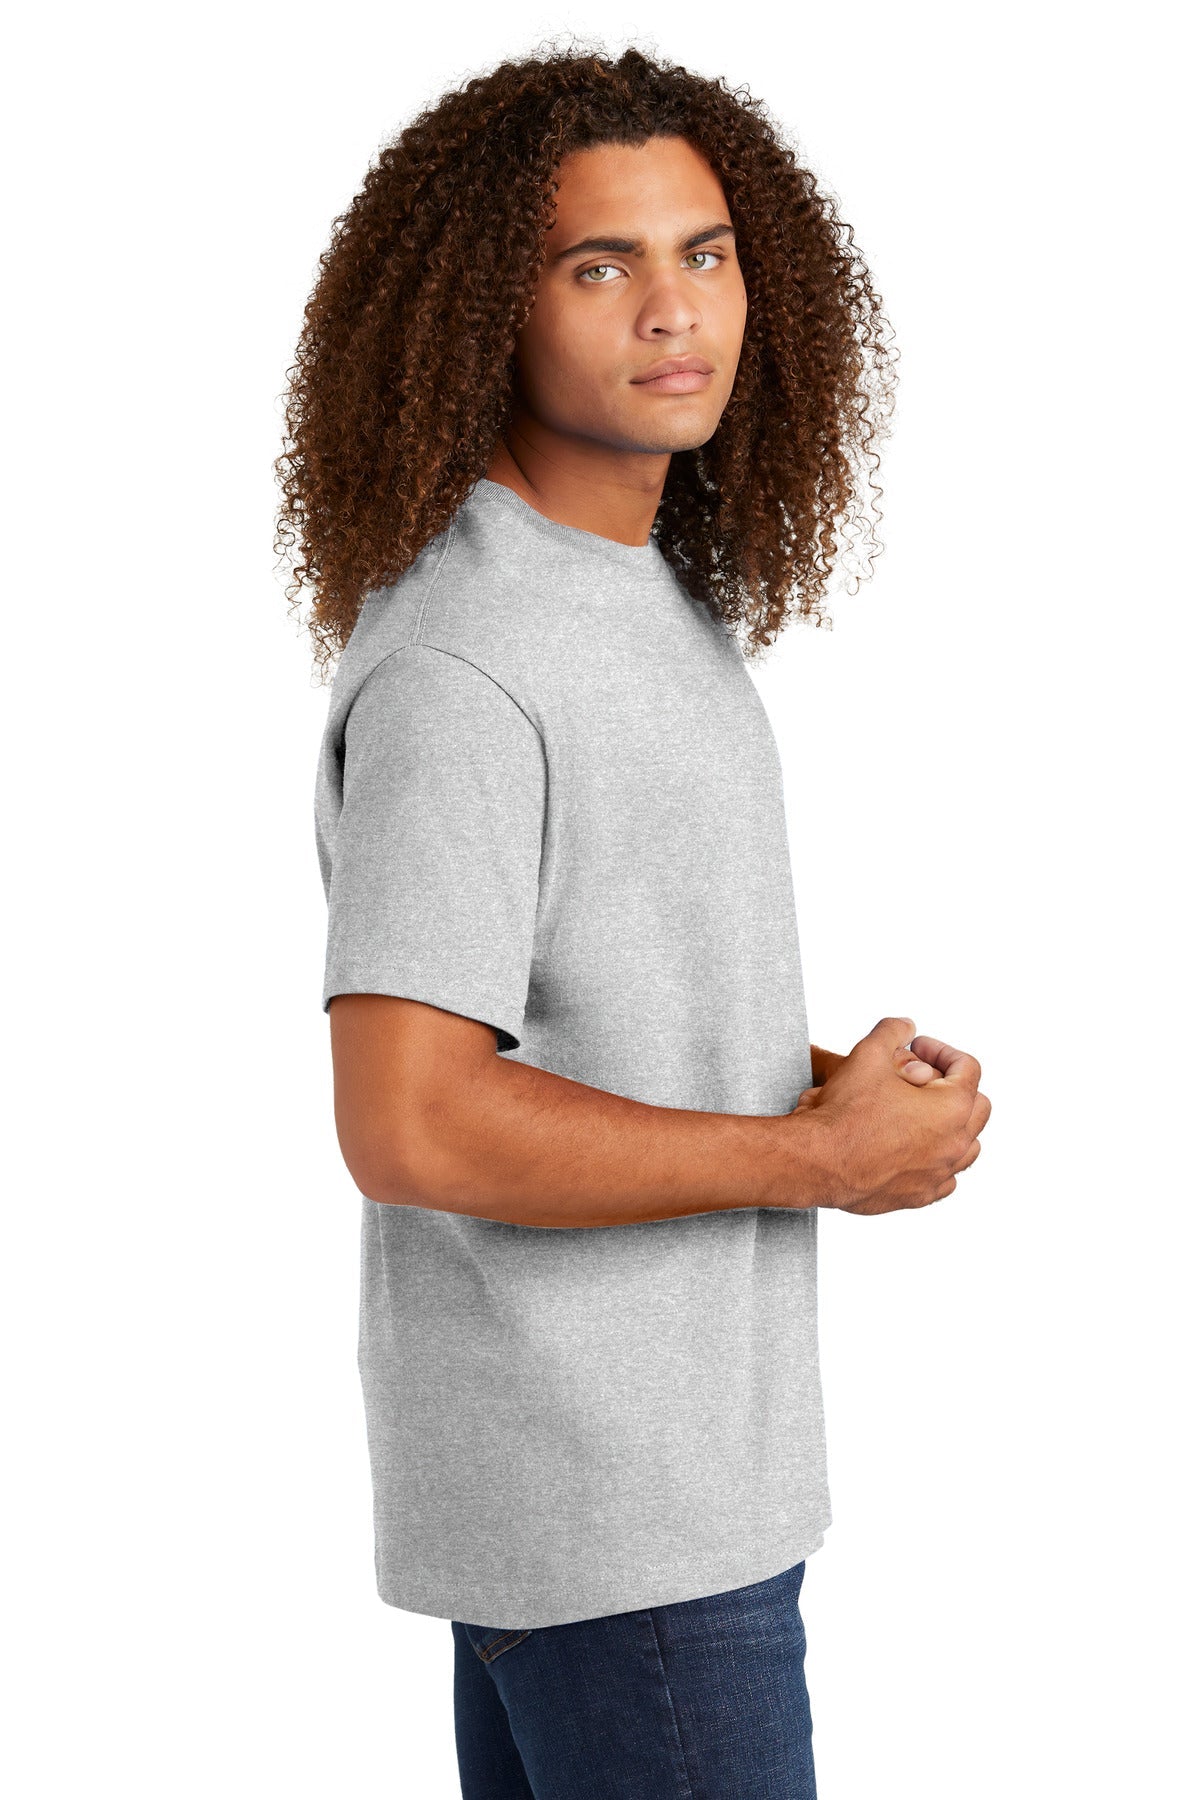 American Apparel® Relaxed T-Shirt 1301W [Ash Grey] - DFW Impression